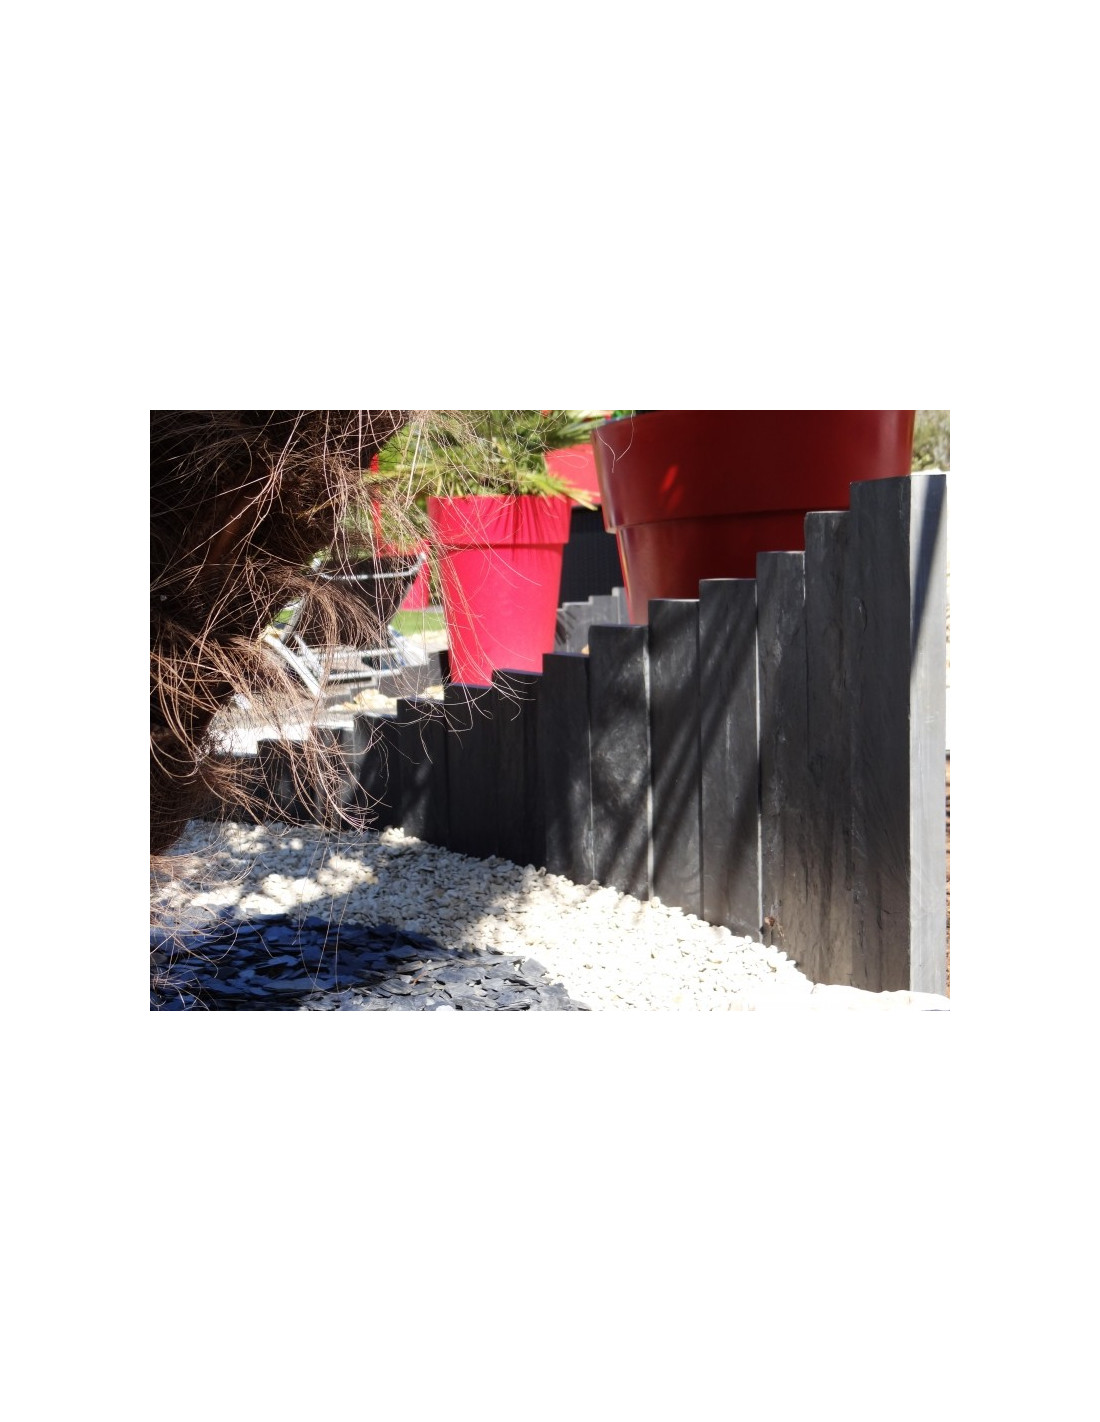 Vente de brise vue en piquets de Schistes pour clôture jardin Eguilles -  Carrelage intérieur et extérieur à Eguilles : salle bain, cuisine et  terrasse